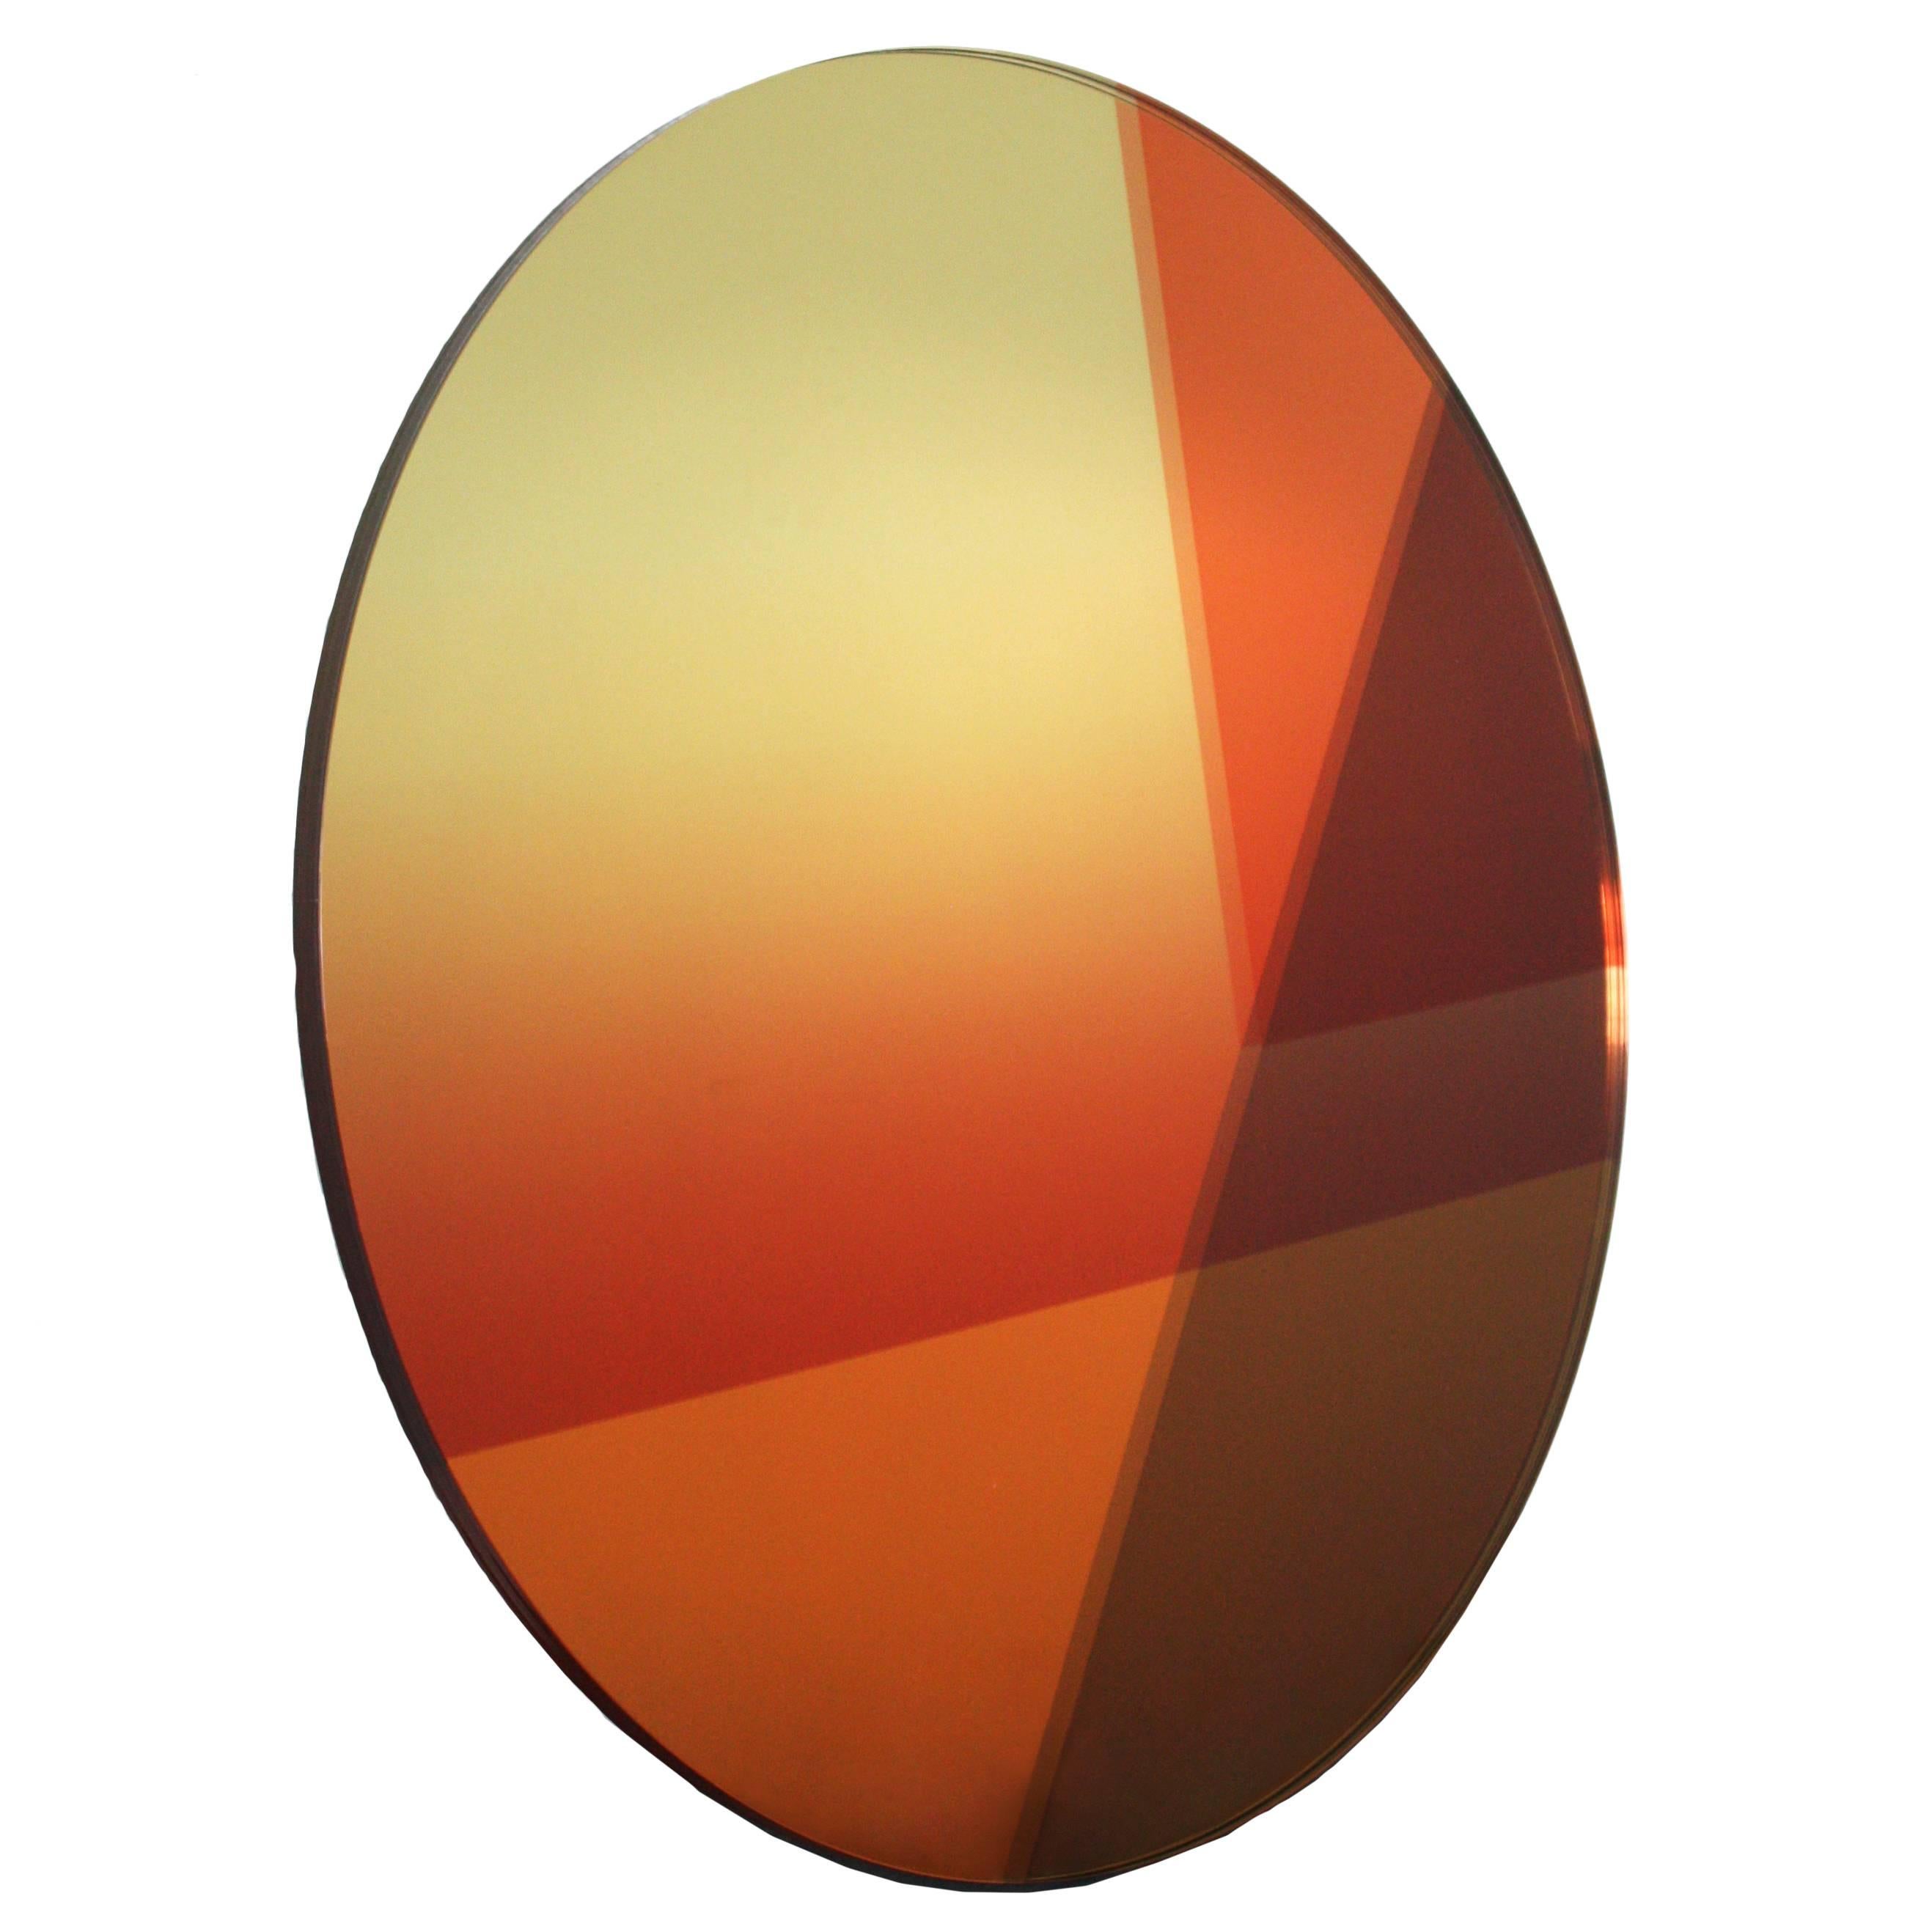  Zeitgenössischer runder Spiegel 77 cm, Seeing Glass Series von Sabine Marcelis, Gold